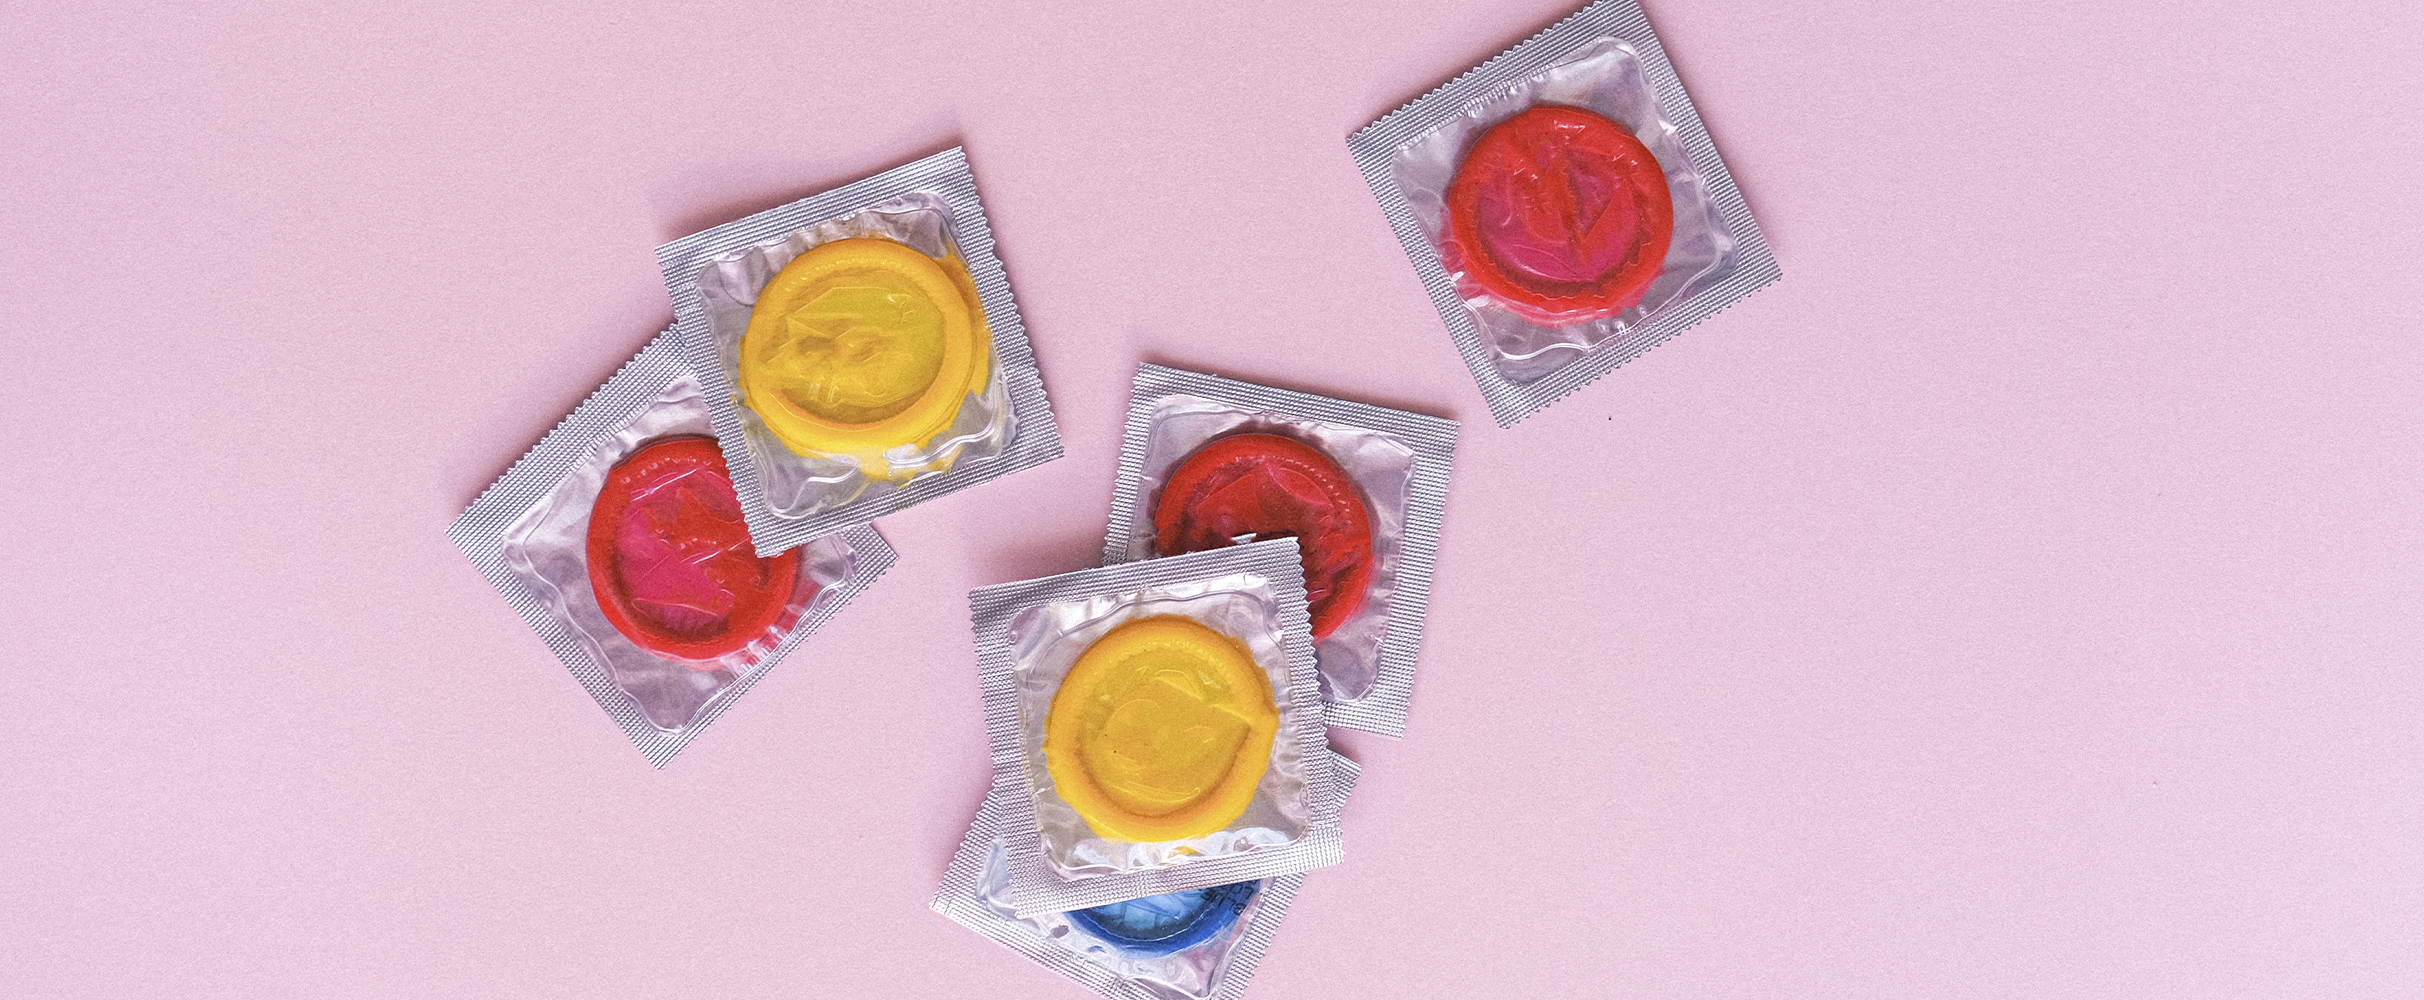 Een historische uitspraak: man krijgt celstraf voor stiekem condoom afdoen tijdens seks